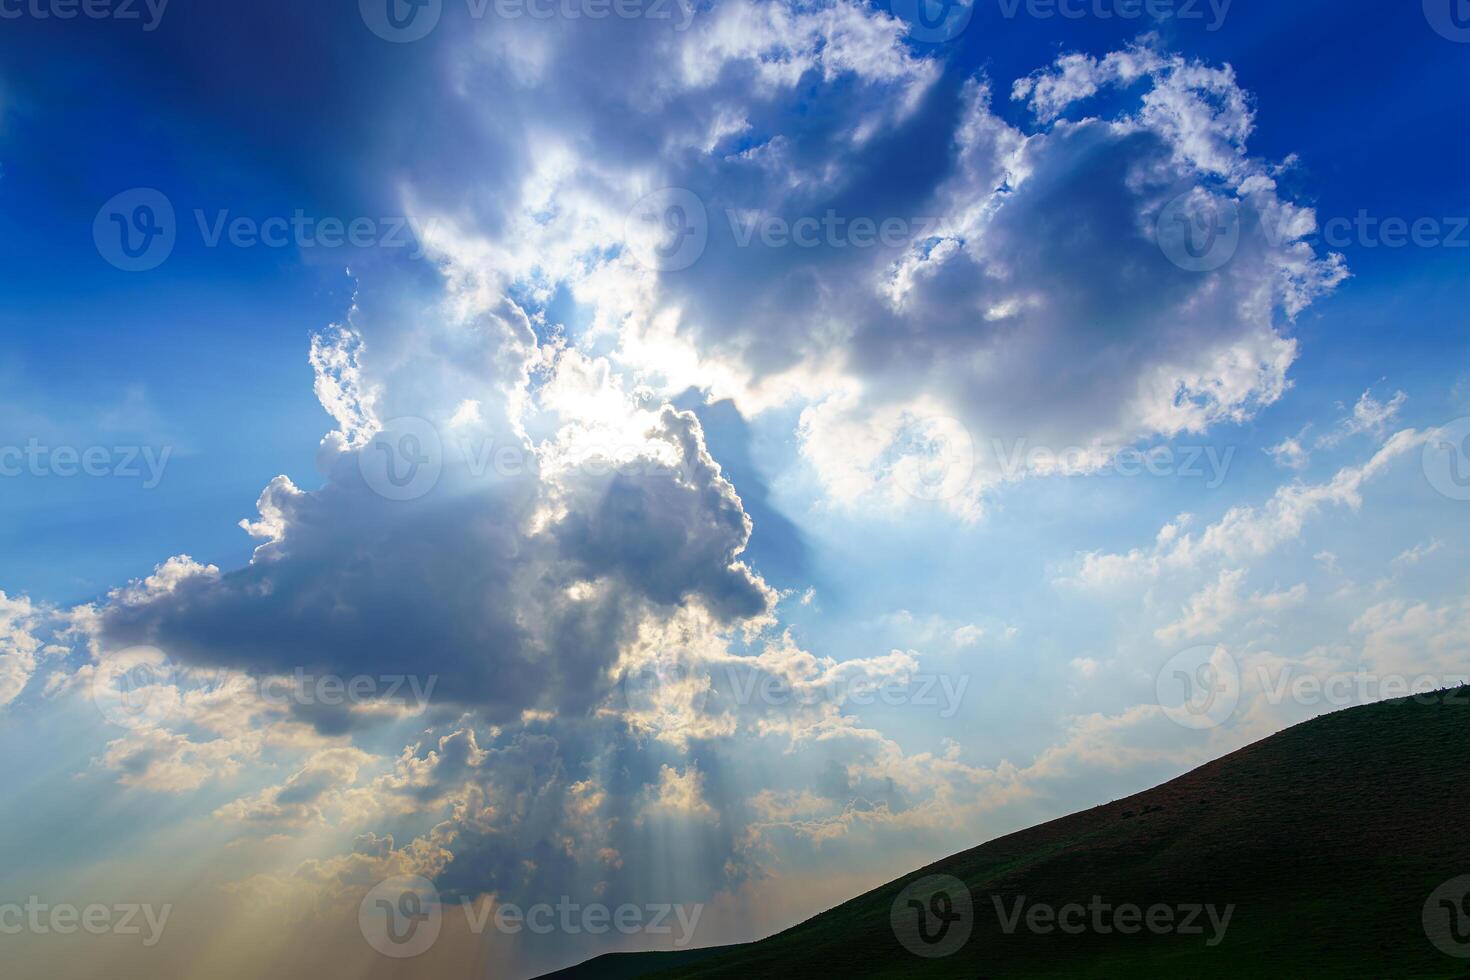 rayos de sol rotura mediante dramático cúmulo nubes cambio de clima. esperanza o religión concepto. foto